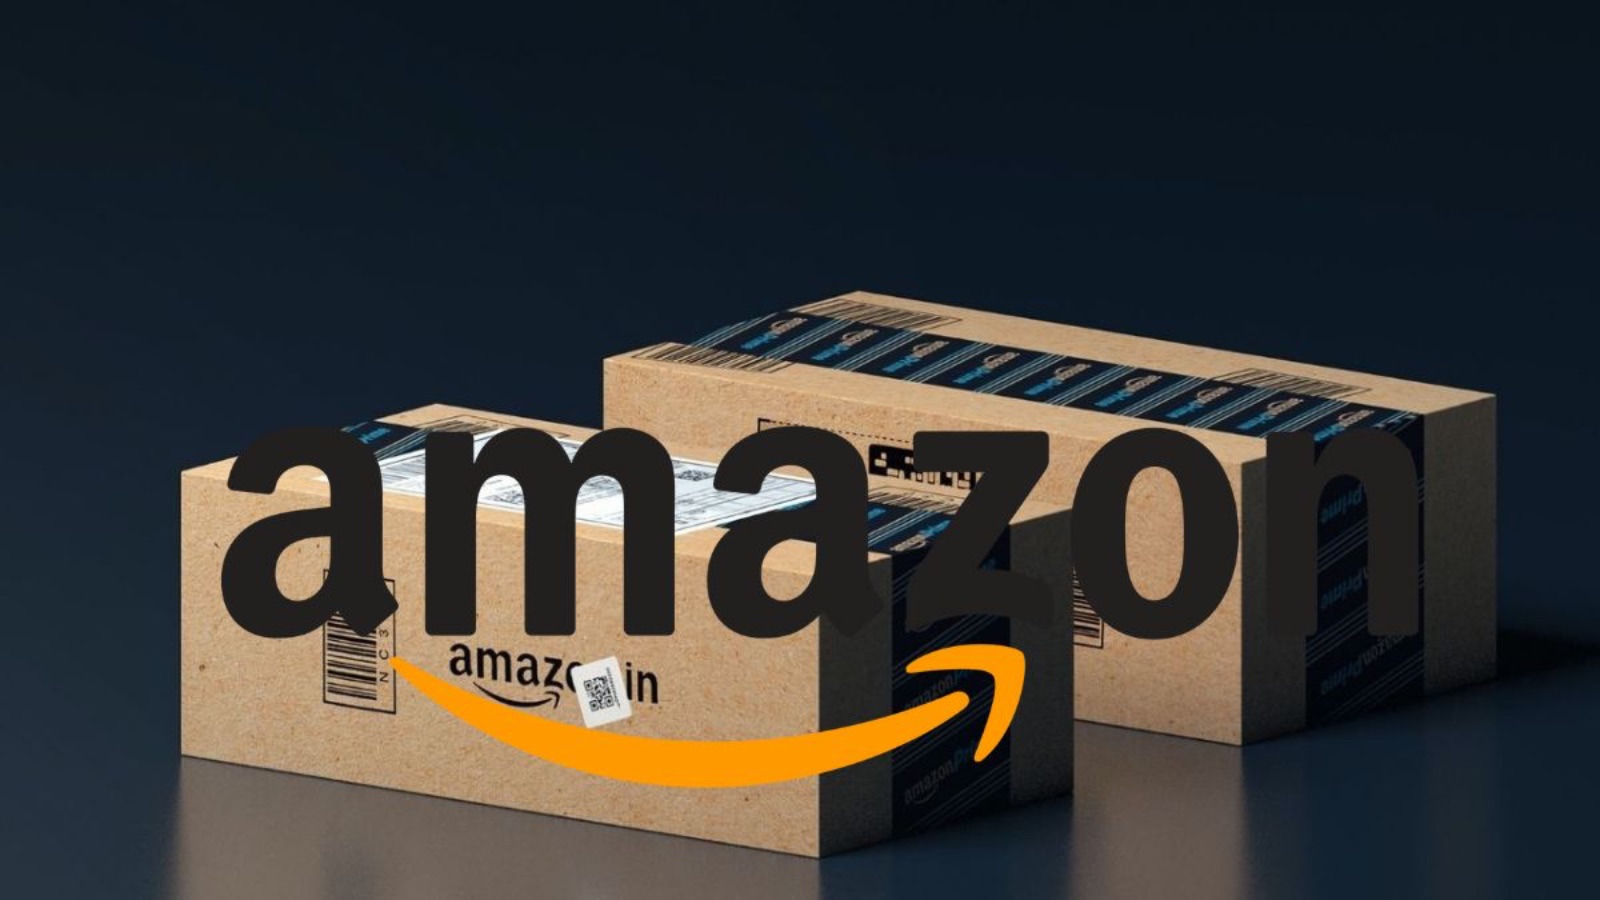 Amazon, continua il NATALE con offerte bomba su smartphone e PC